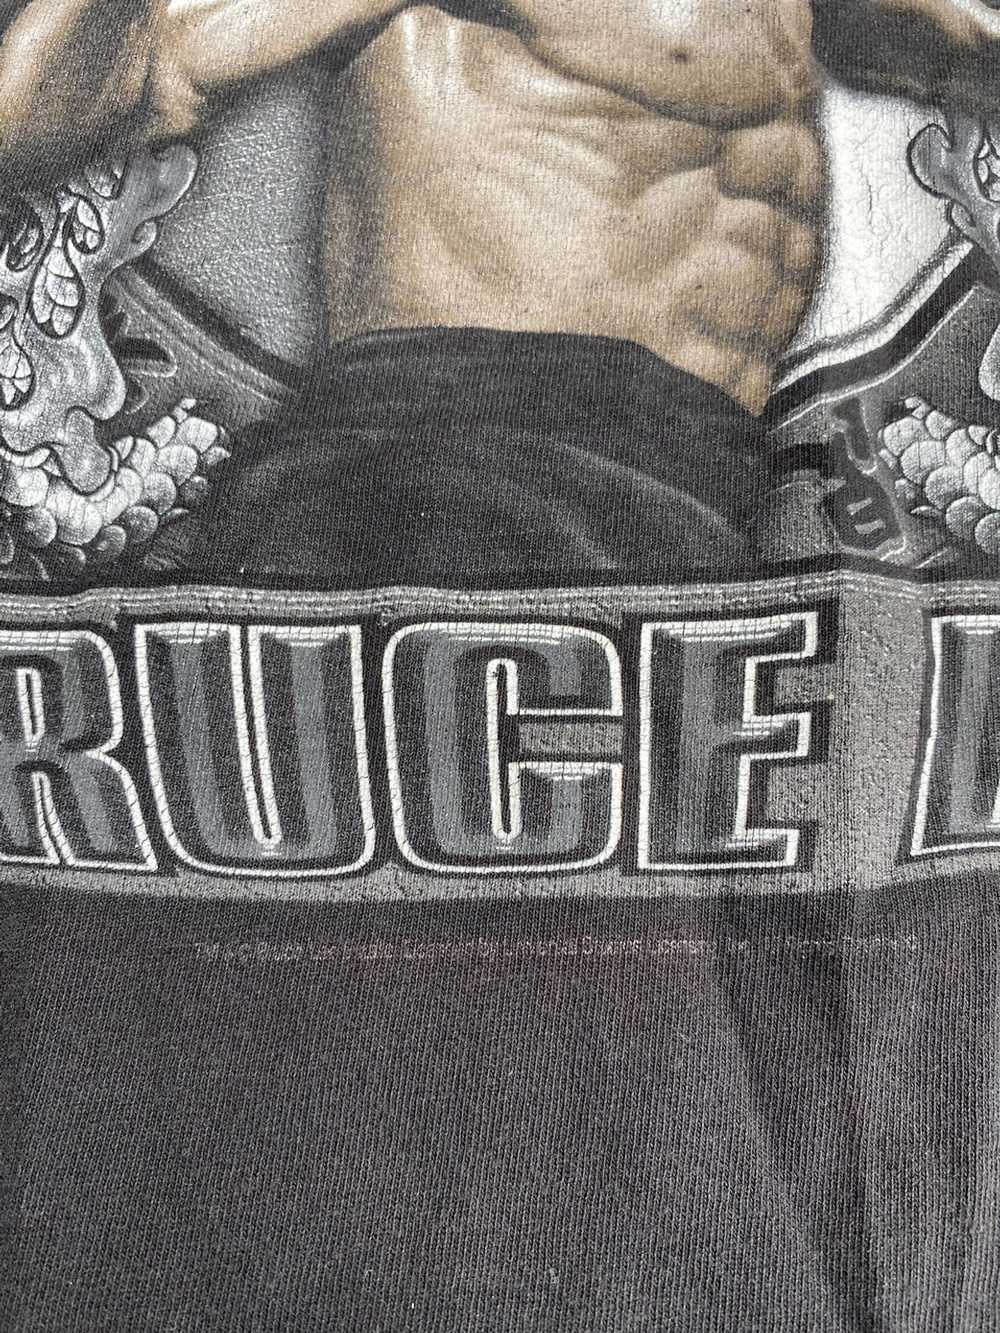 Bruce Lee × Movie × Vintage Vintage Bruce Lee tee - image 4